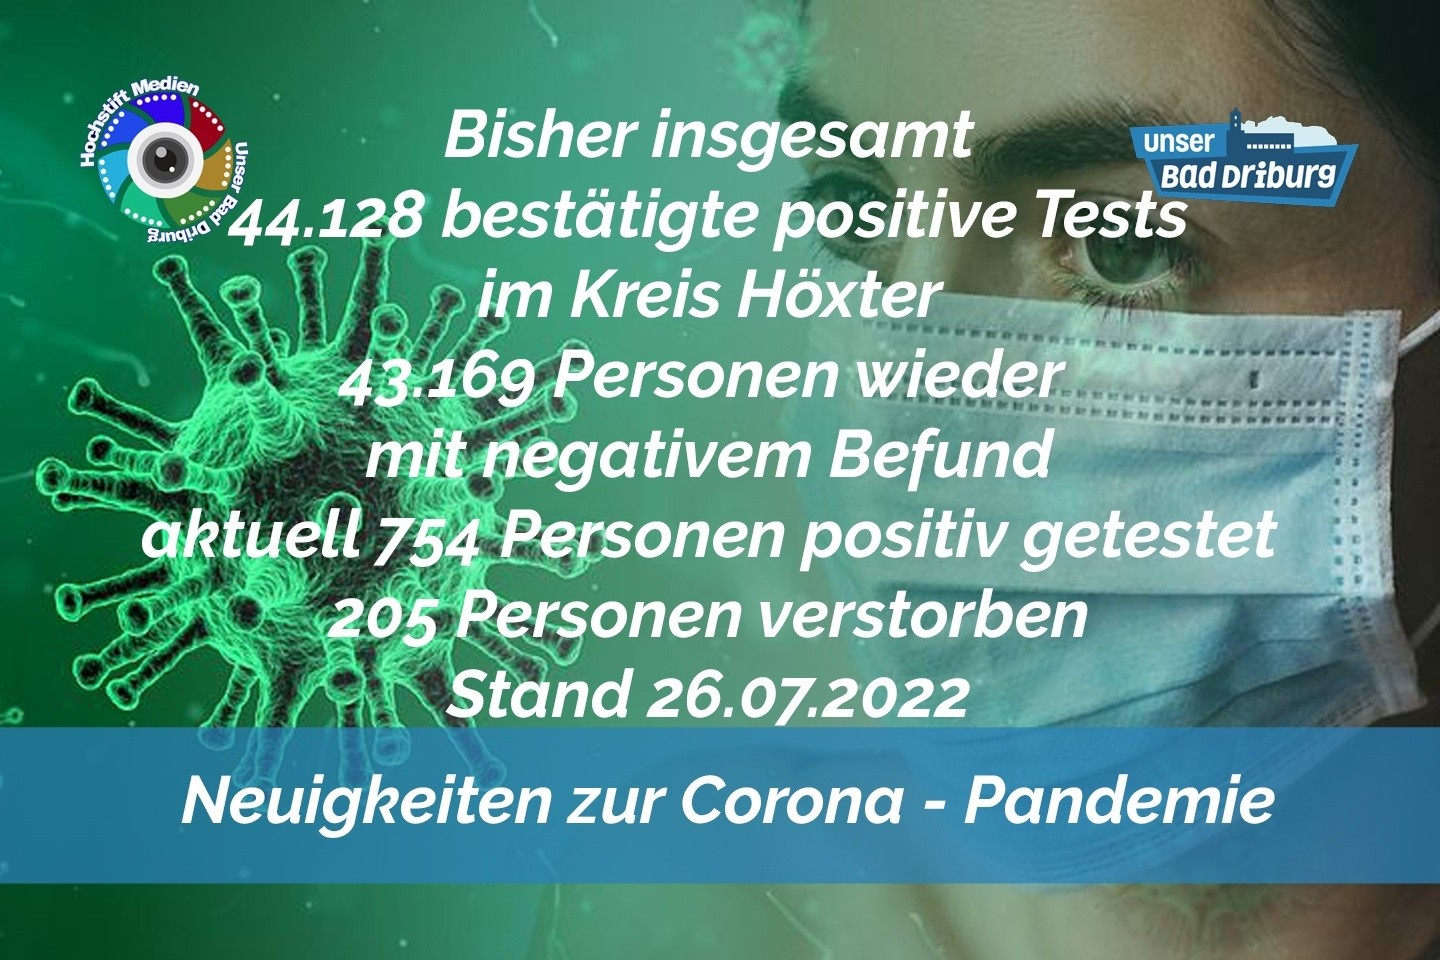 Update 26. Juli 2022: 172 weitere amtlich positive Tests im Kreis Höxter